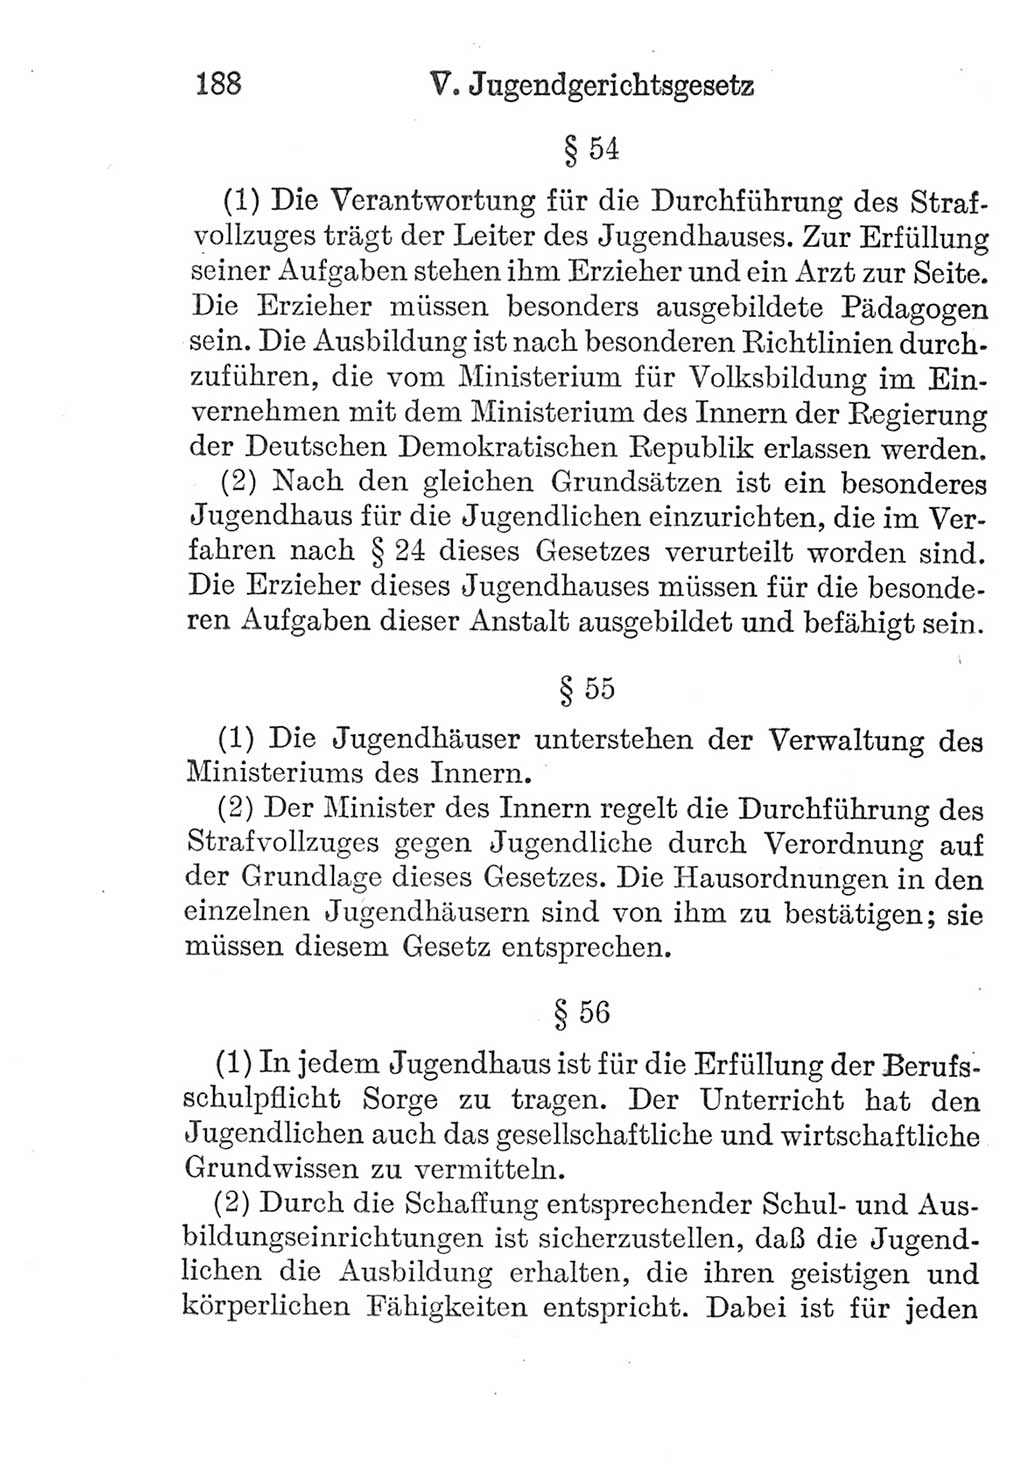 Strafprozeßordnung (StPO), Gerichtsverfassungsgesetz (GVG), Staatsanwaltsgesetz (StAG) und Jugendgerichtsgesetz (JGG) [Deutsche Demokratische Republik (DDR)] 1952, Seite 188 (StPO GVG StAG JGG DDR 1952, S. 188)